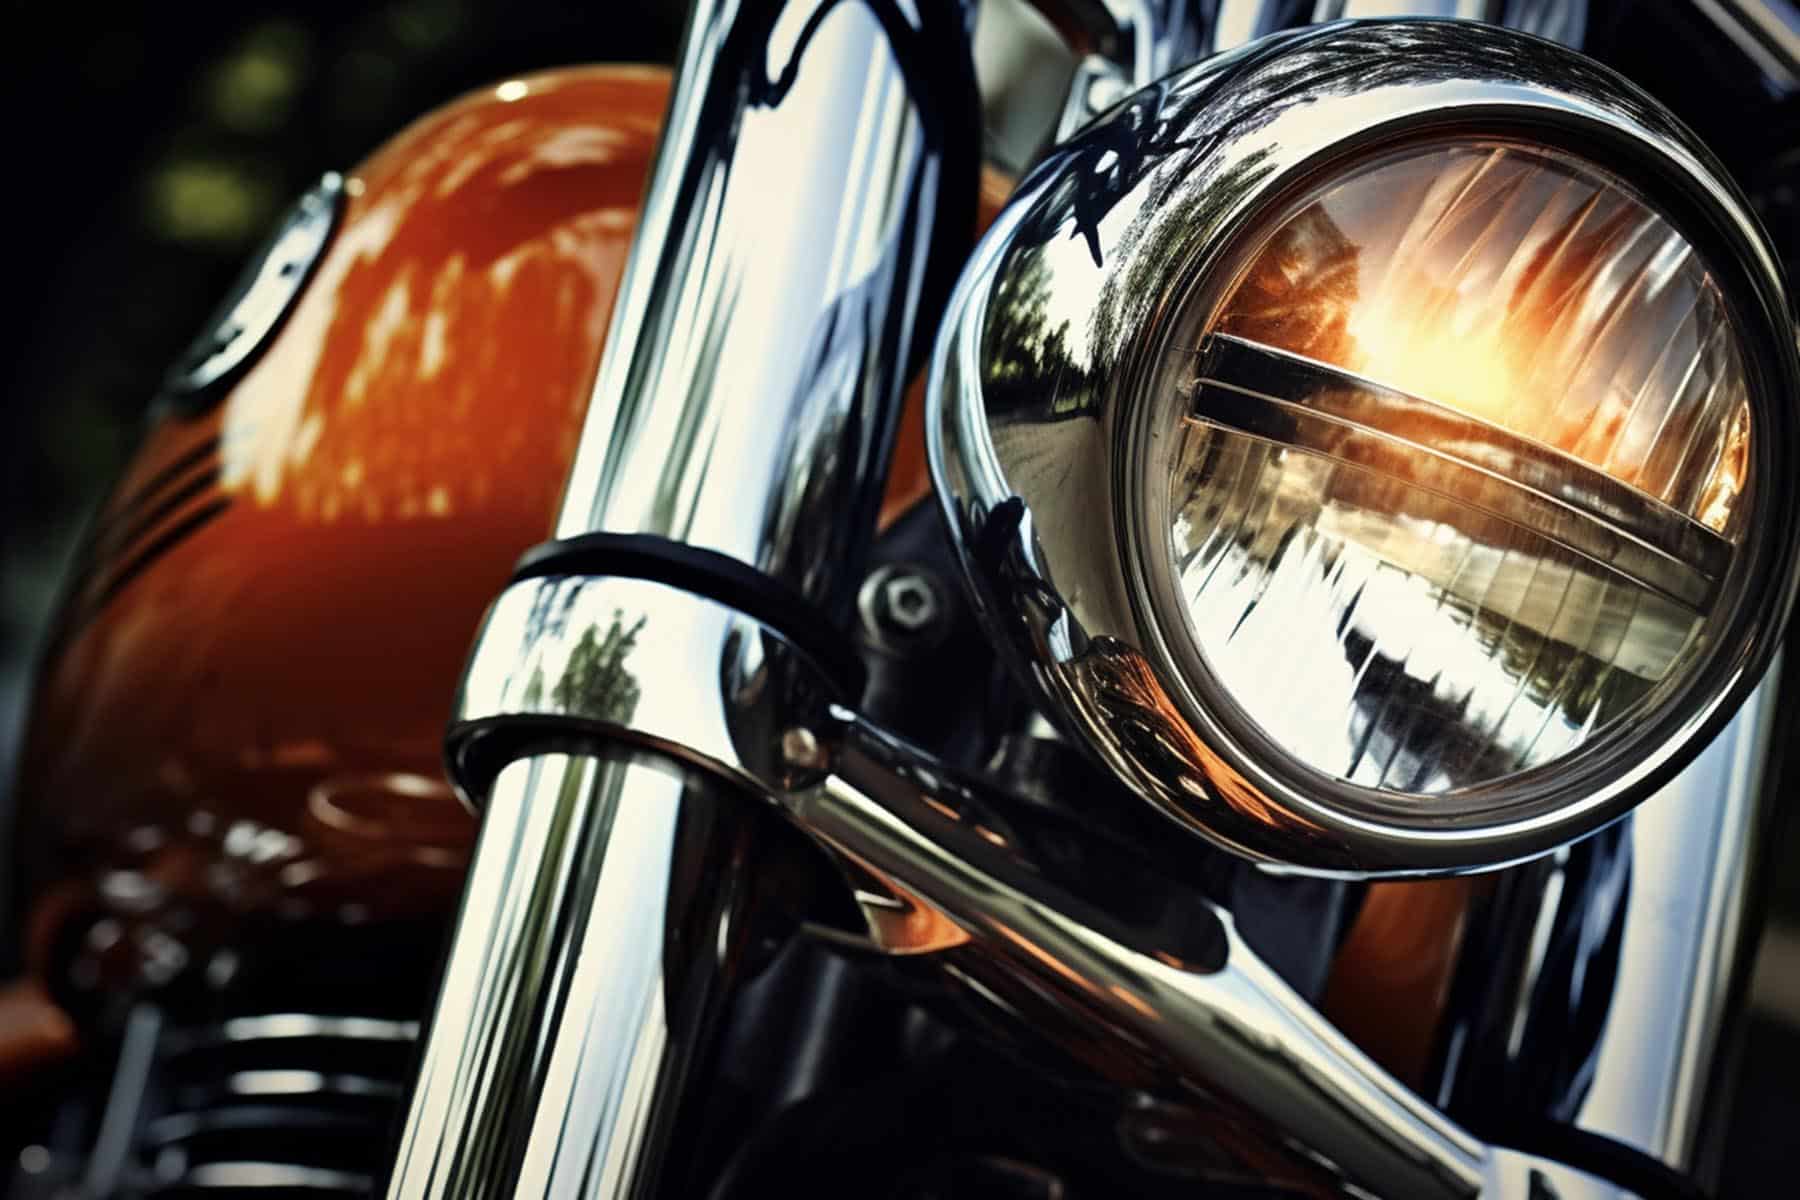 Las partes cromadas de las motos pueden ser estéticas o funcionales